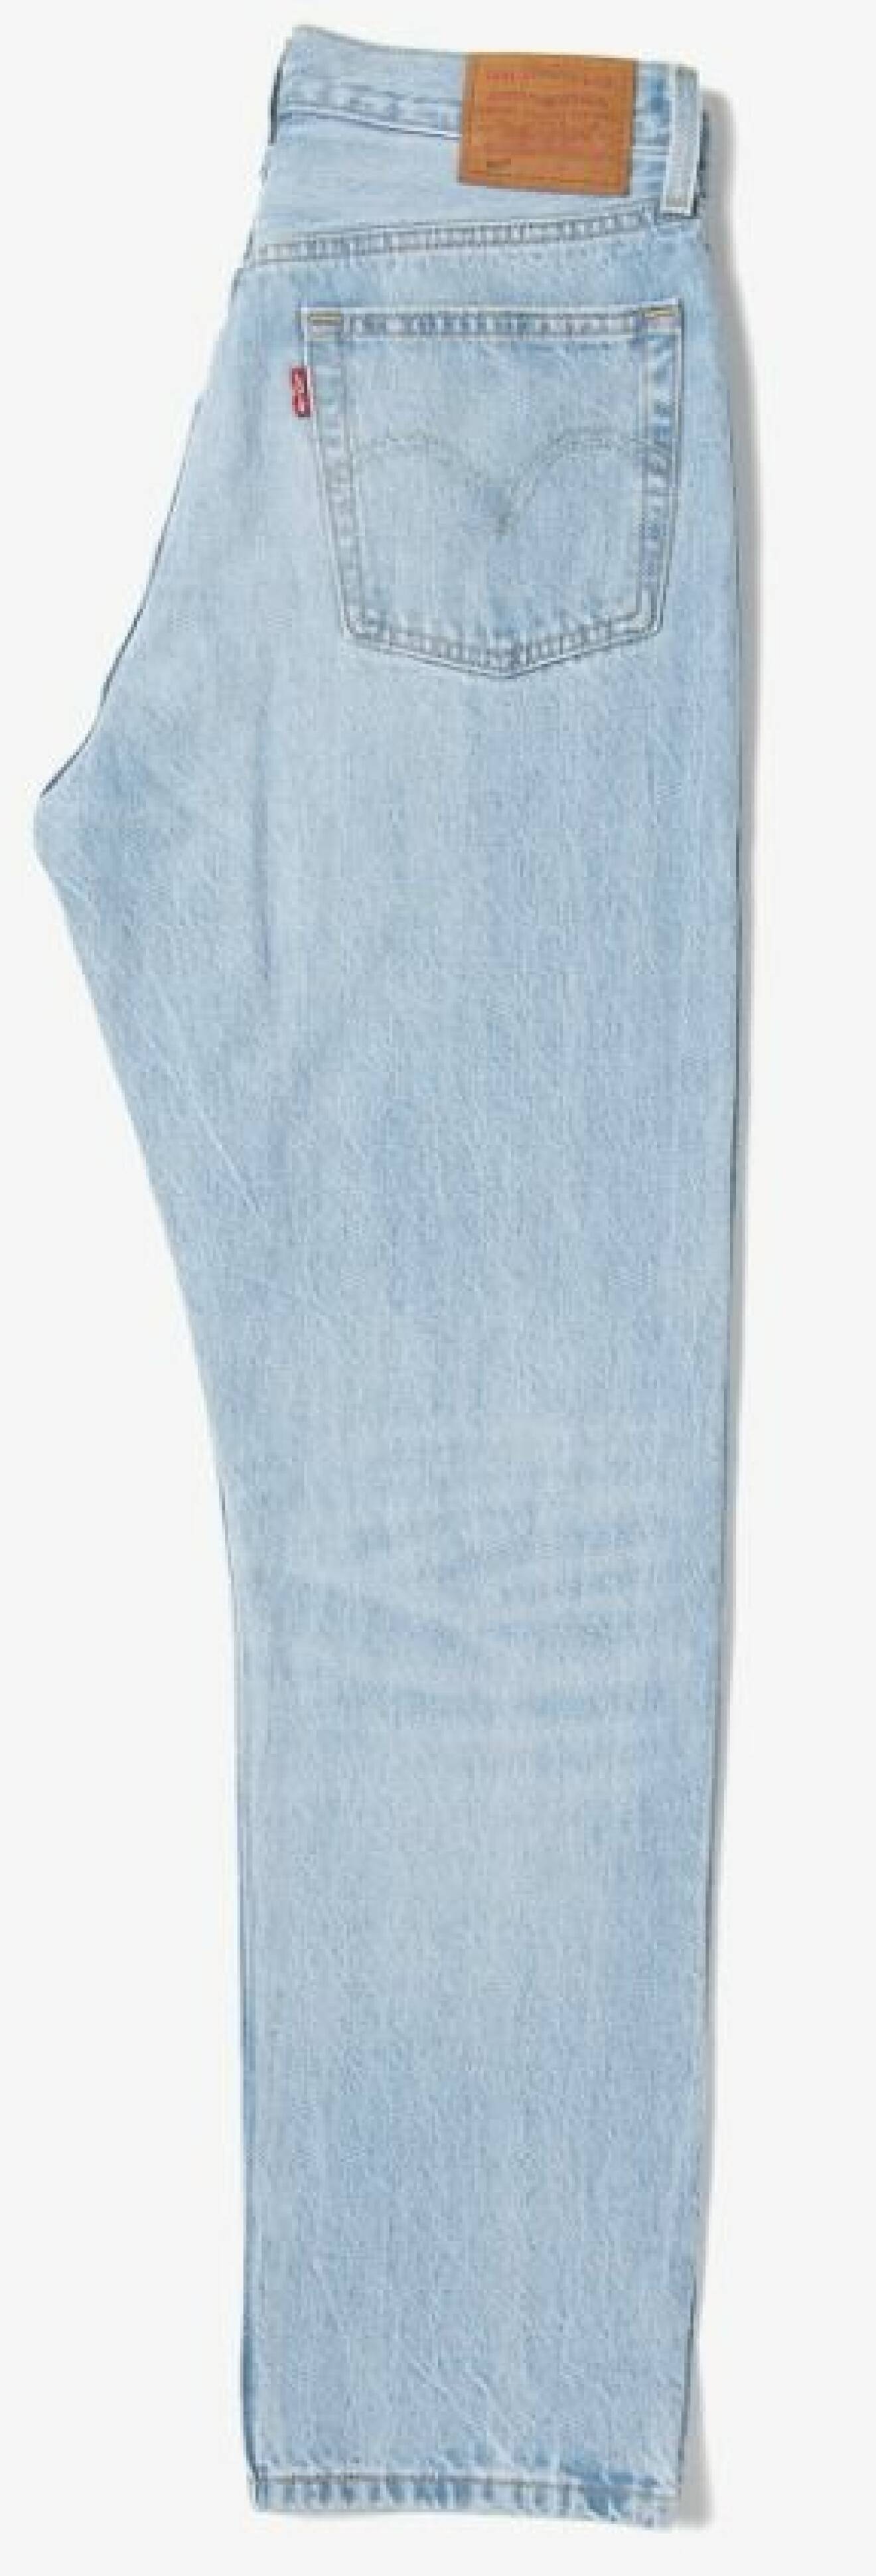 Ljusblå jeans i rak modell från Levis